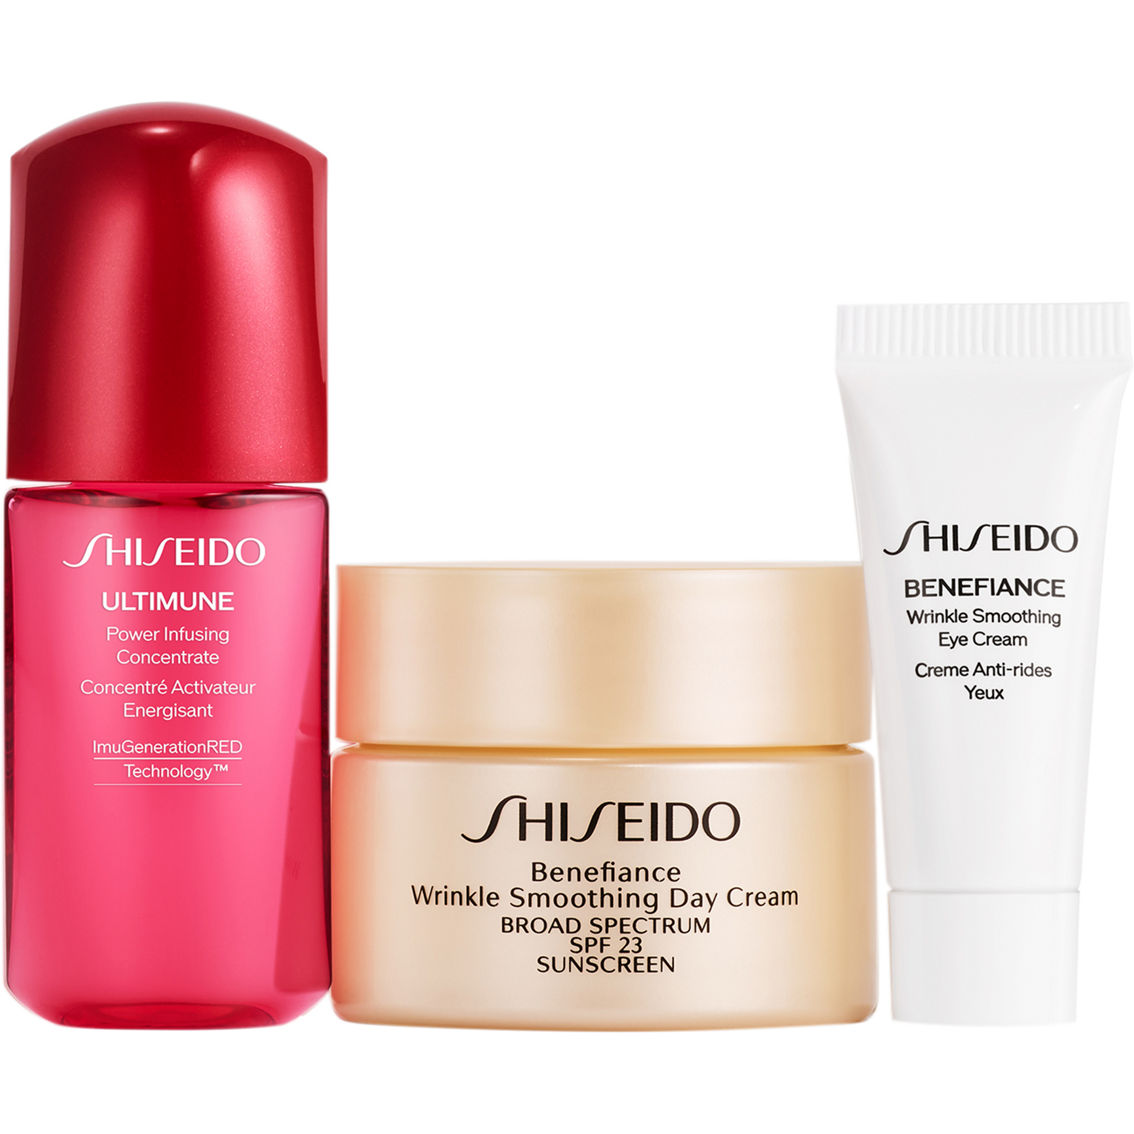 Shiseido Wrinkle Smoothing Starter Set - Image 2 of 3